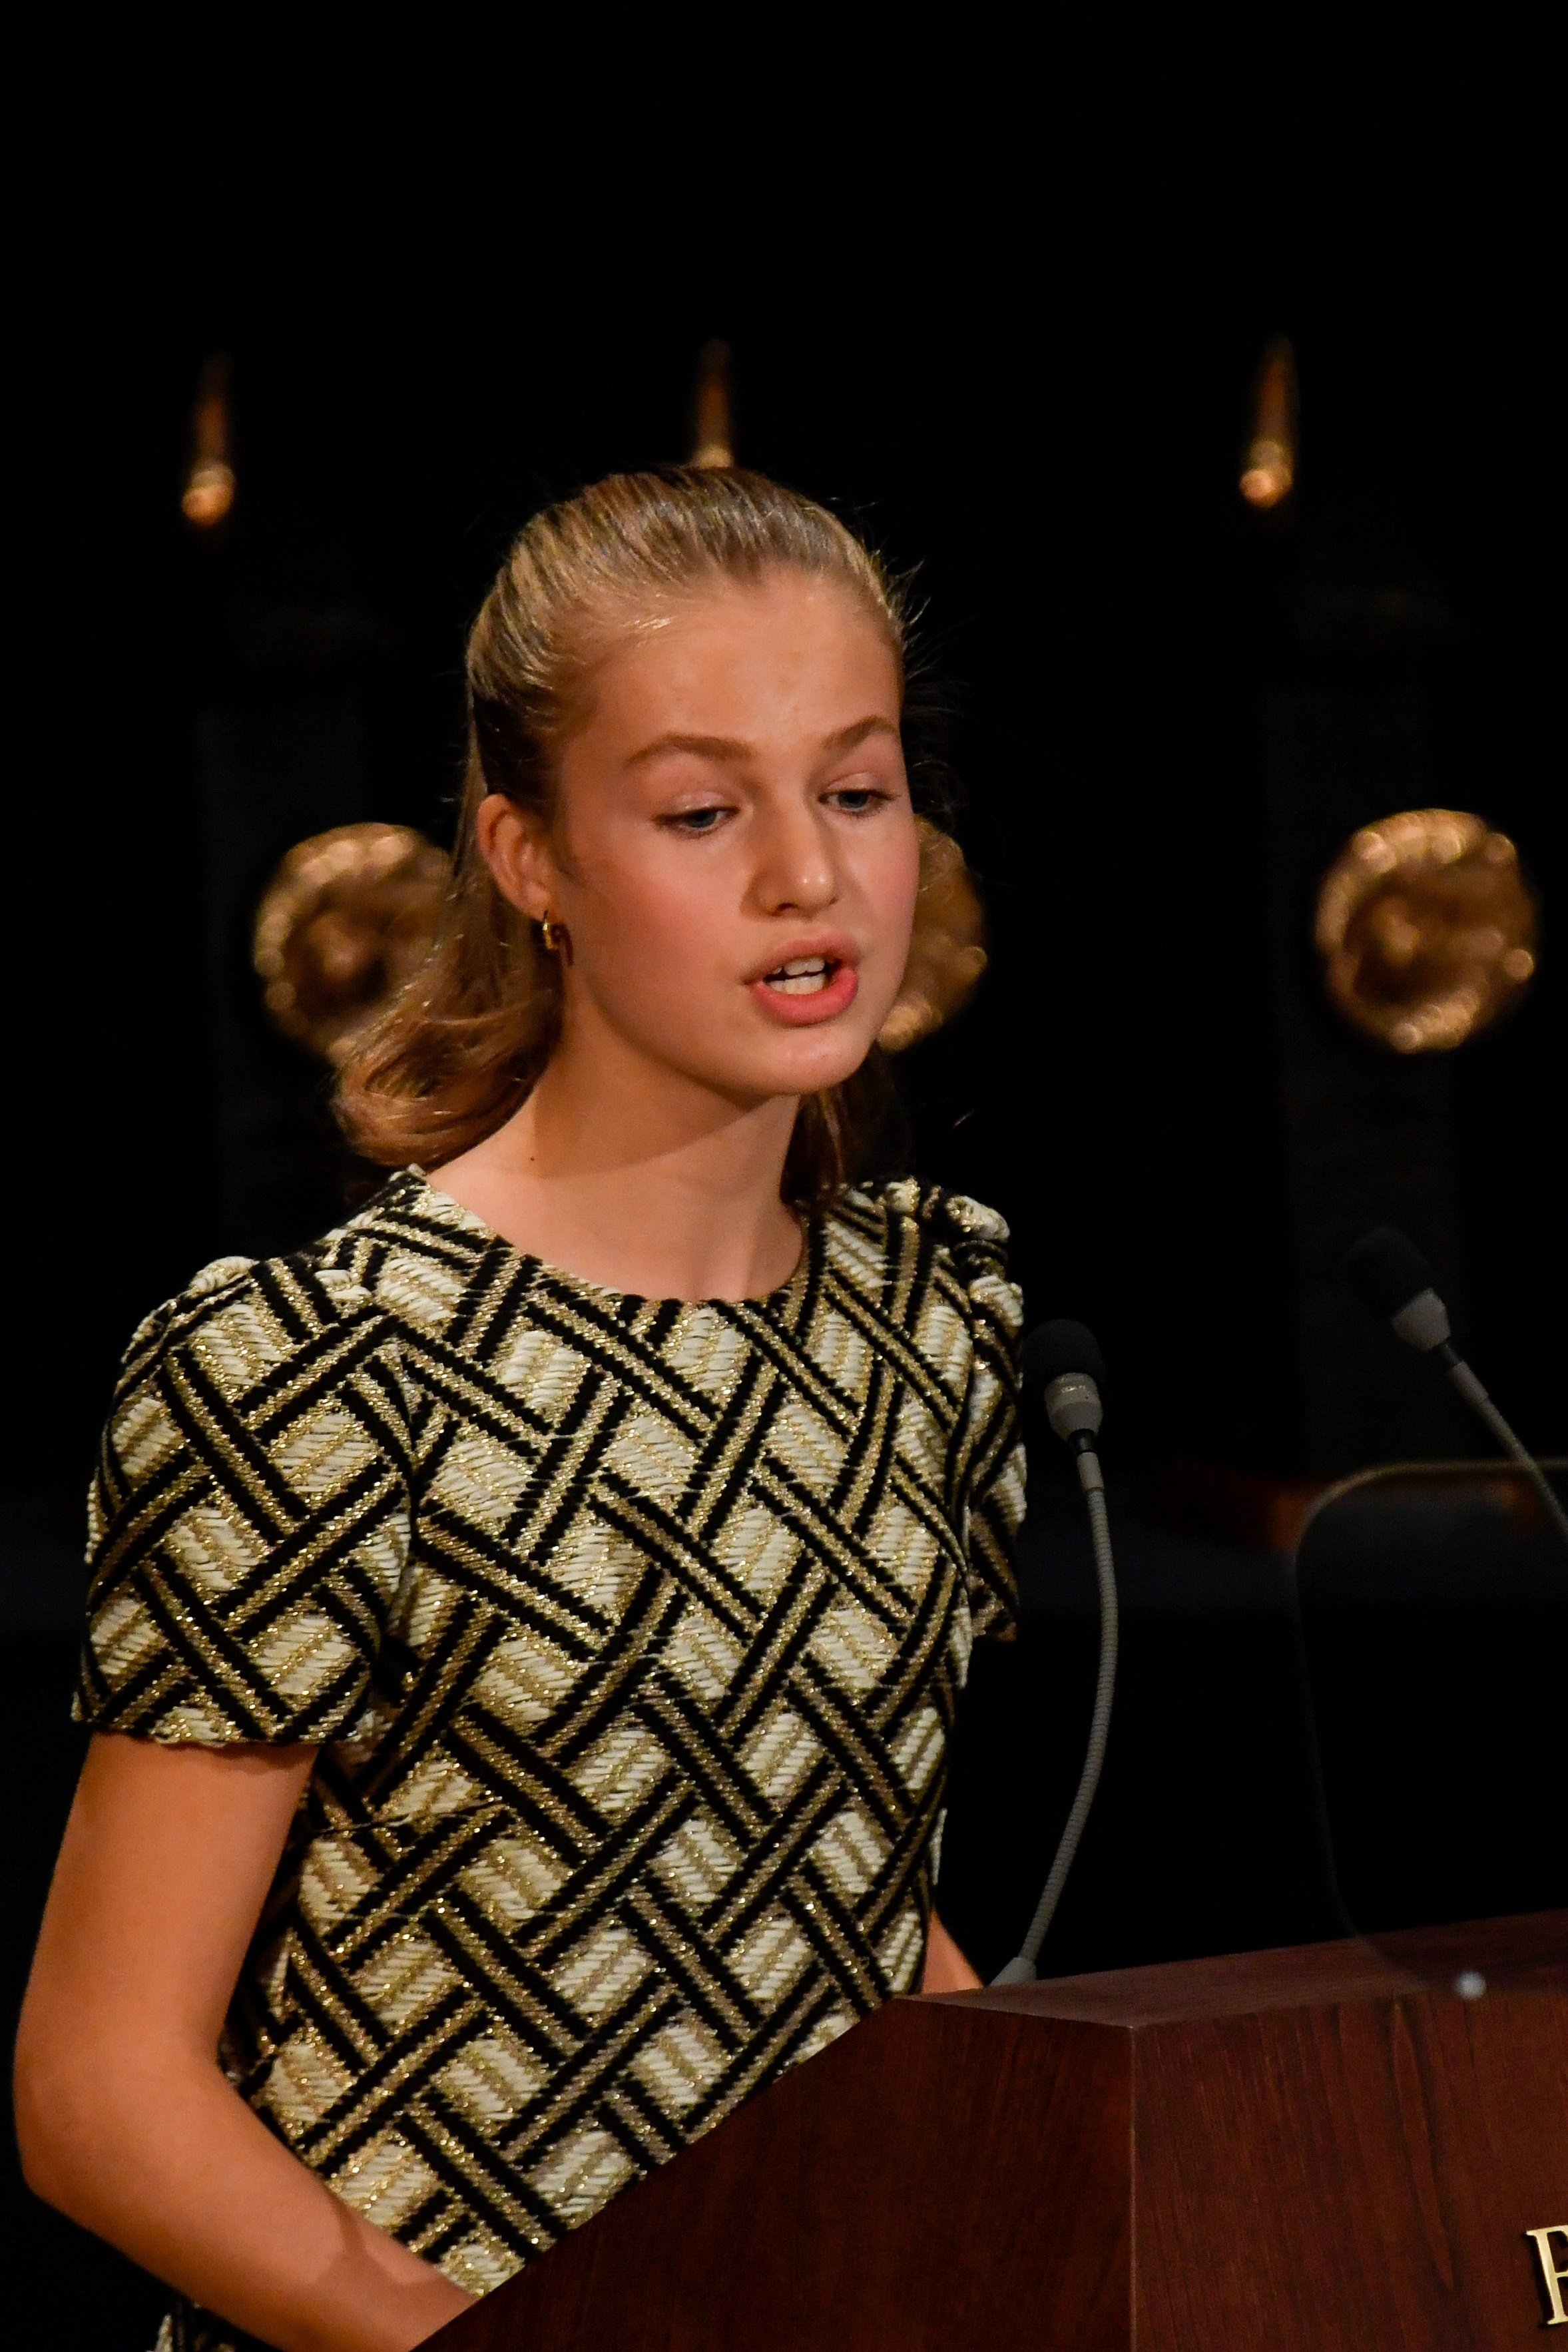 Leonor pija, incapaz de hacer el gesto de la princesa Íngrid de Noruega a los 18 años